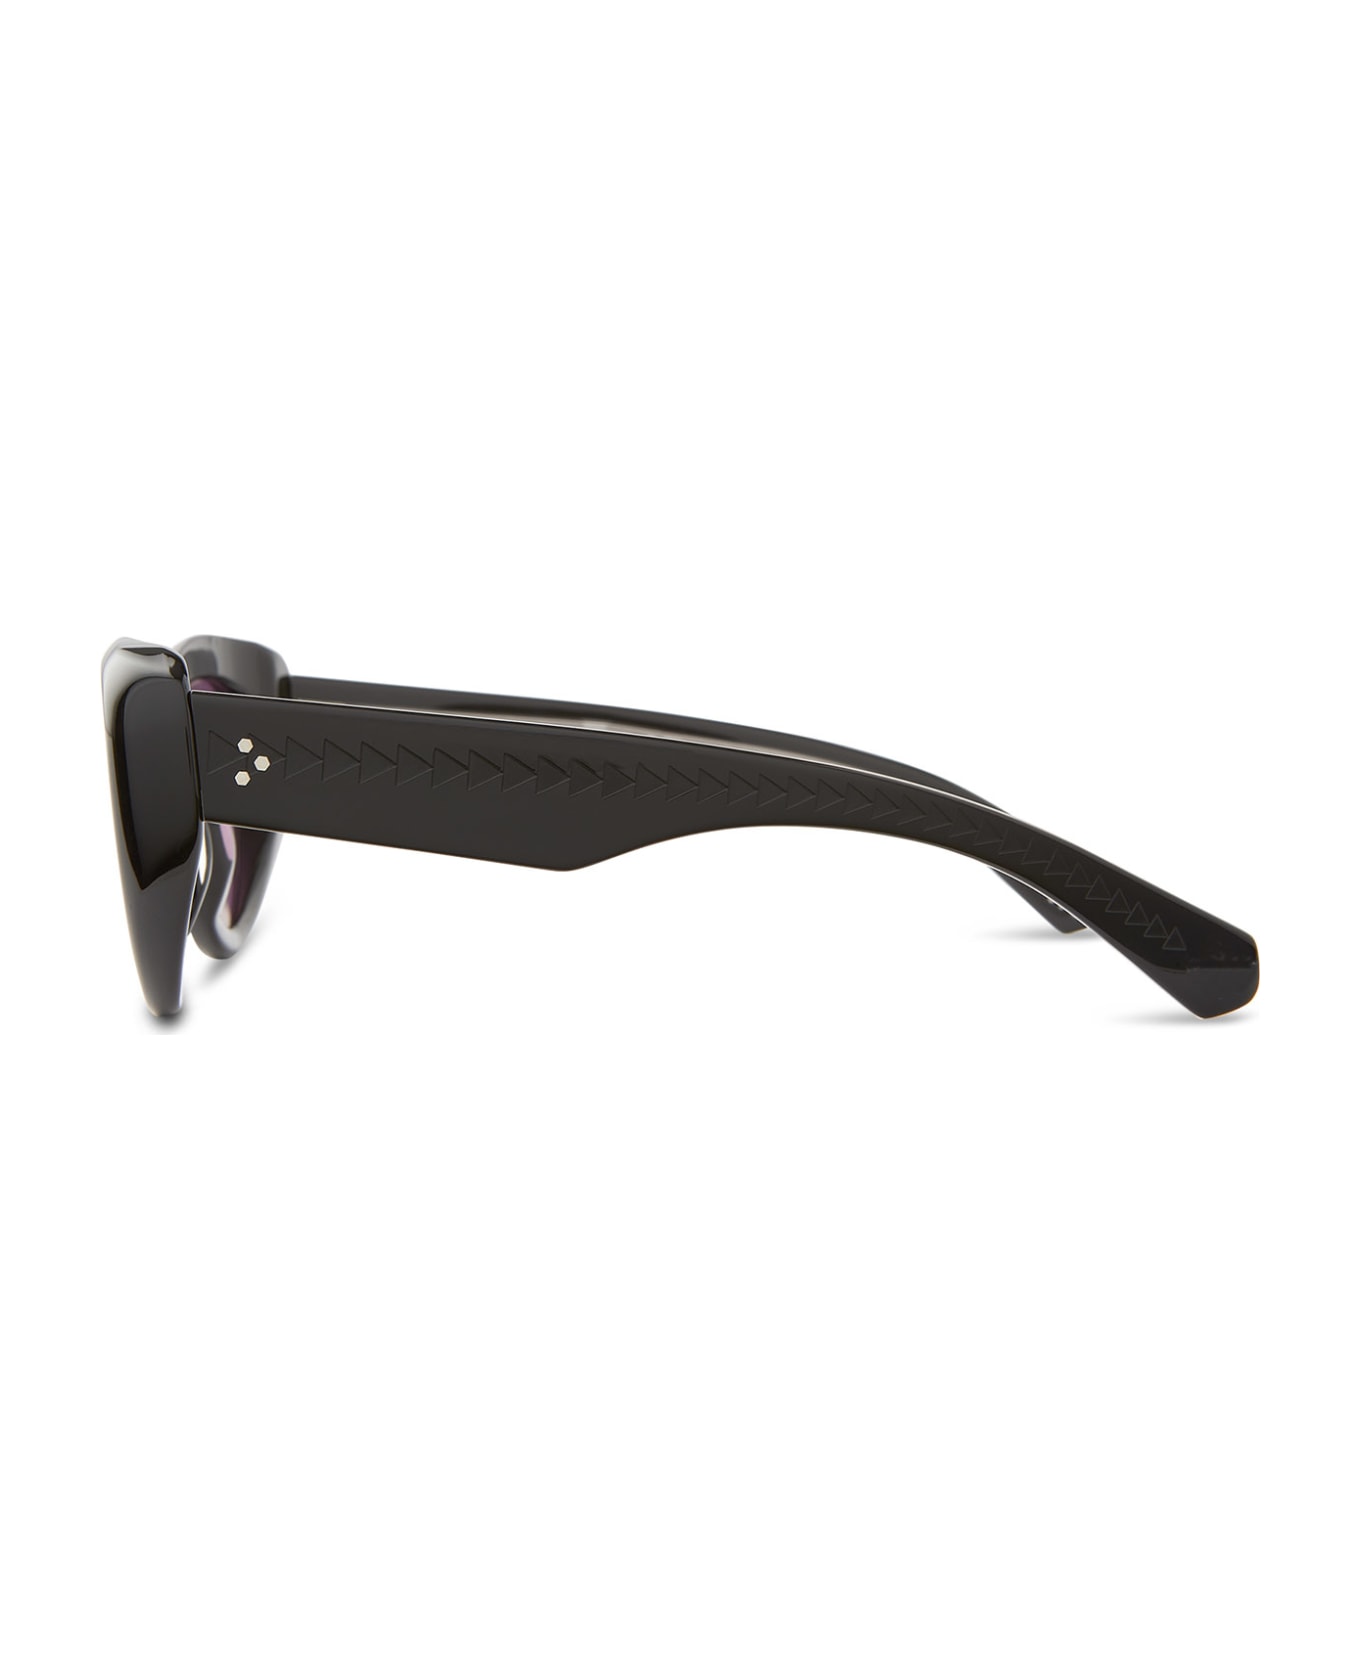 Mr. Leight Reveler S Black-pewter Sunglasses - Black-Pewter